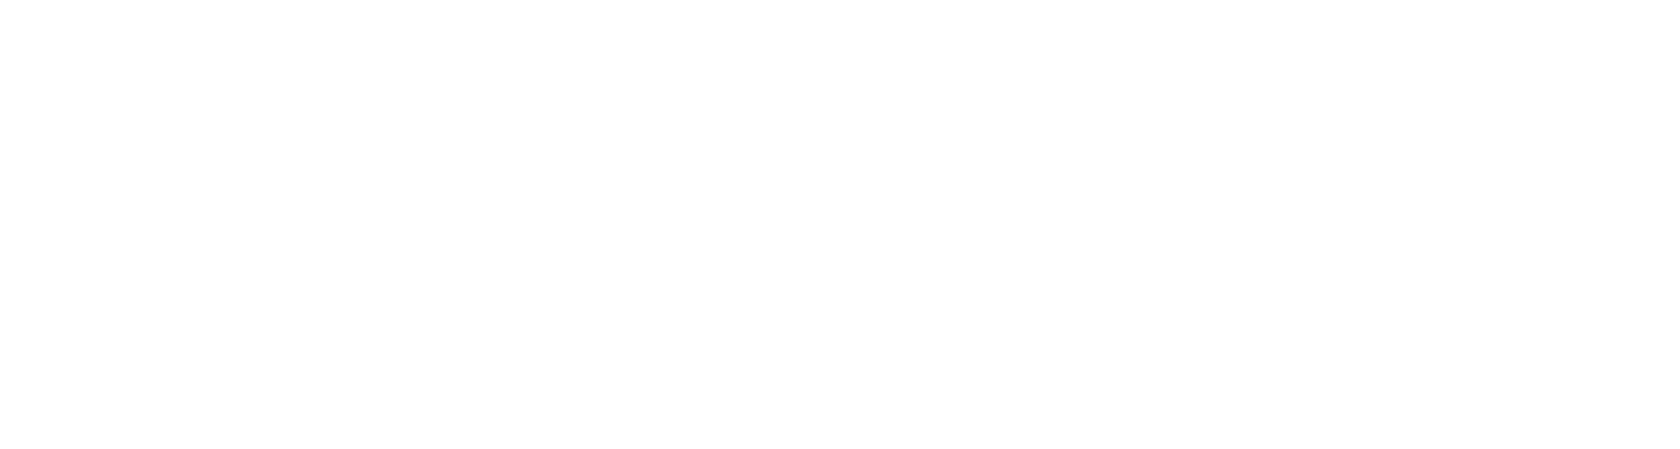 Логотип метро